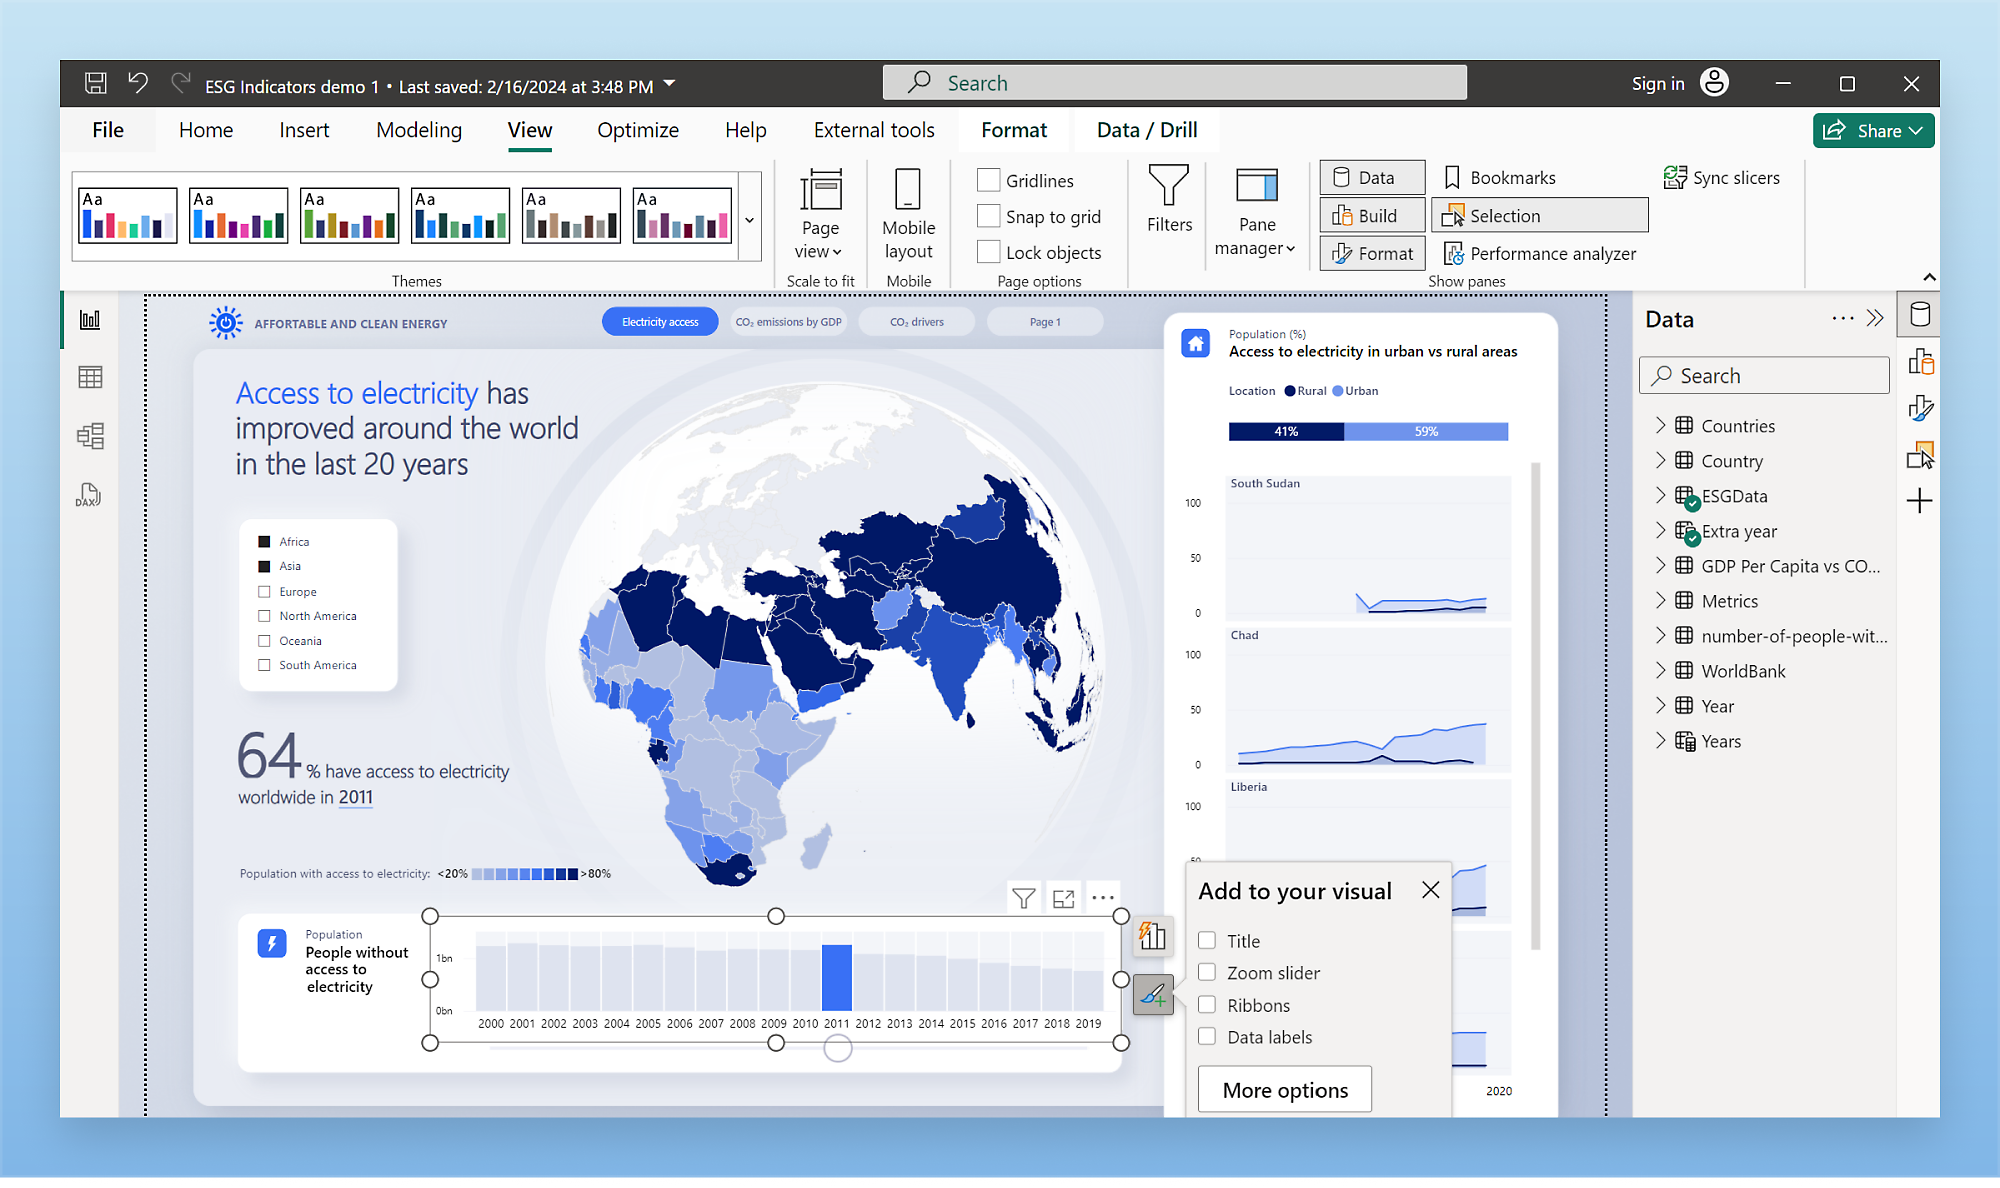 Una schermata del computer visualizza un'interfaccia di visualizzazione dei dati, con una mappa del mondo che evidenzia i miglioramenti dell'accesso all'elettricità